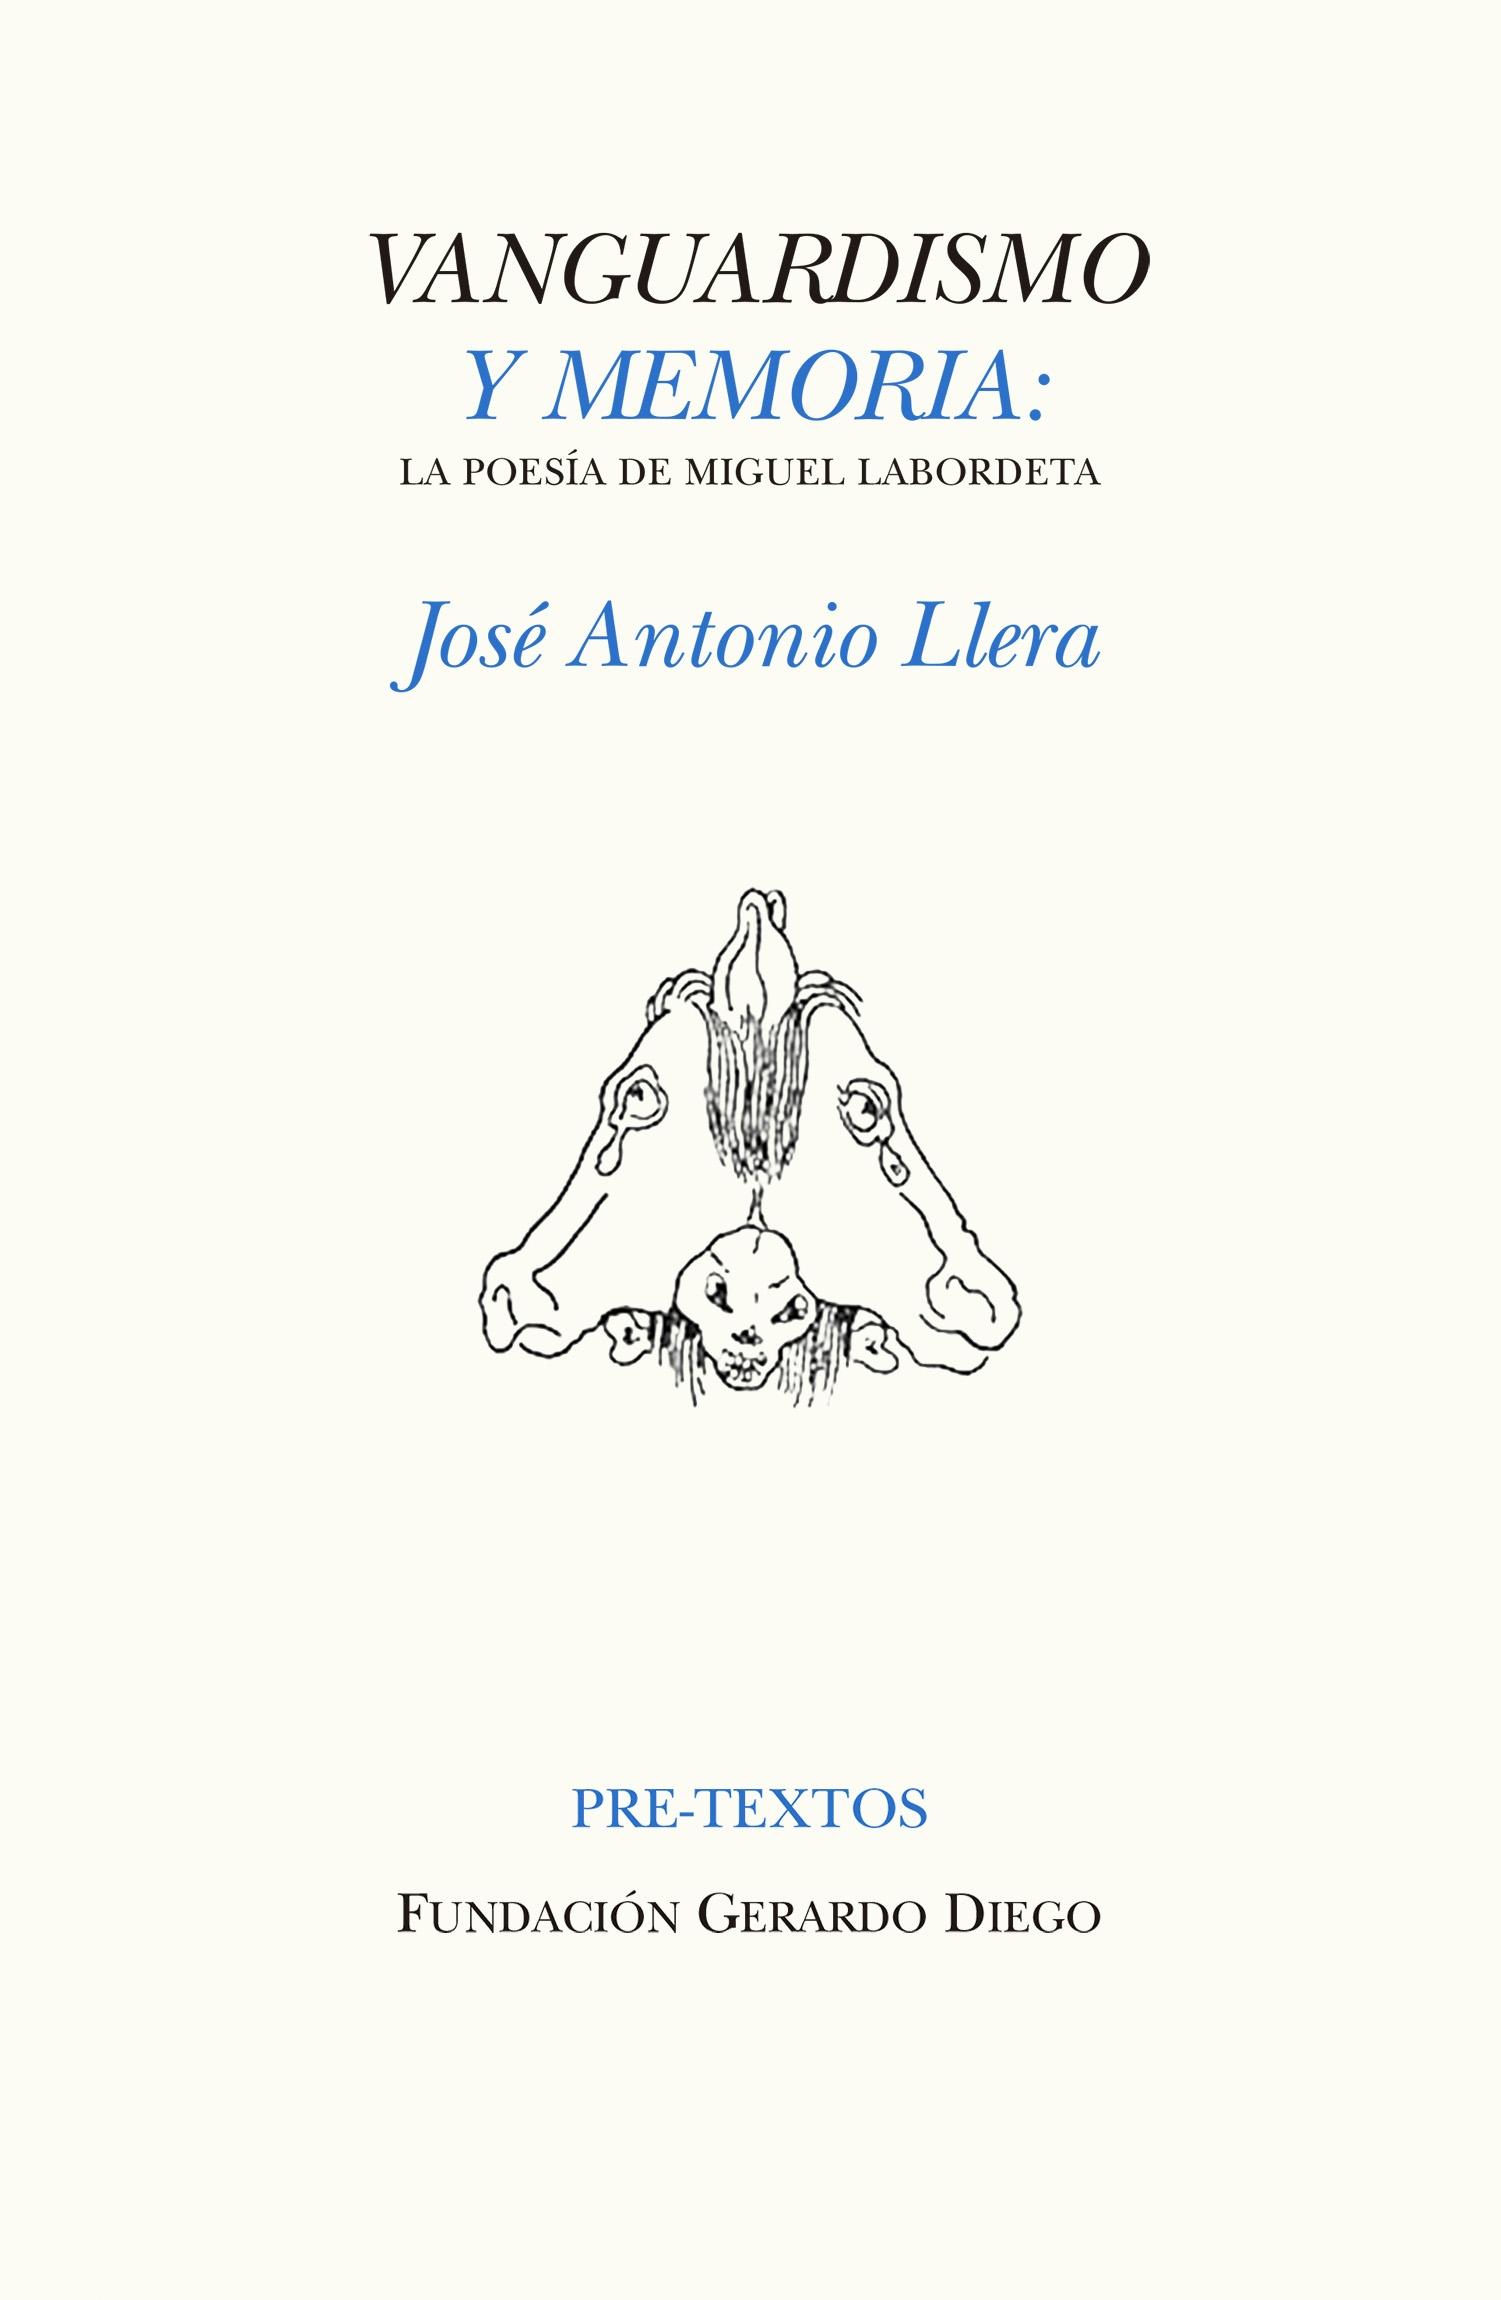 Vanguardismo y Memoria "La Poesía de Miguel Labordeta"